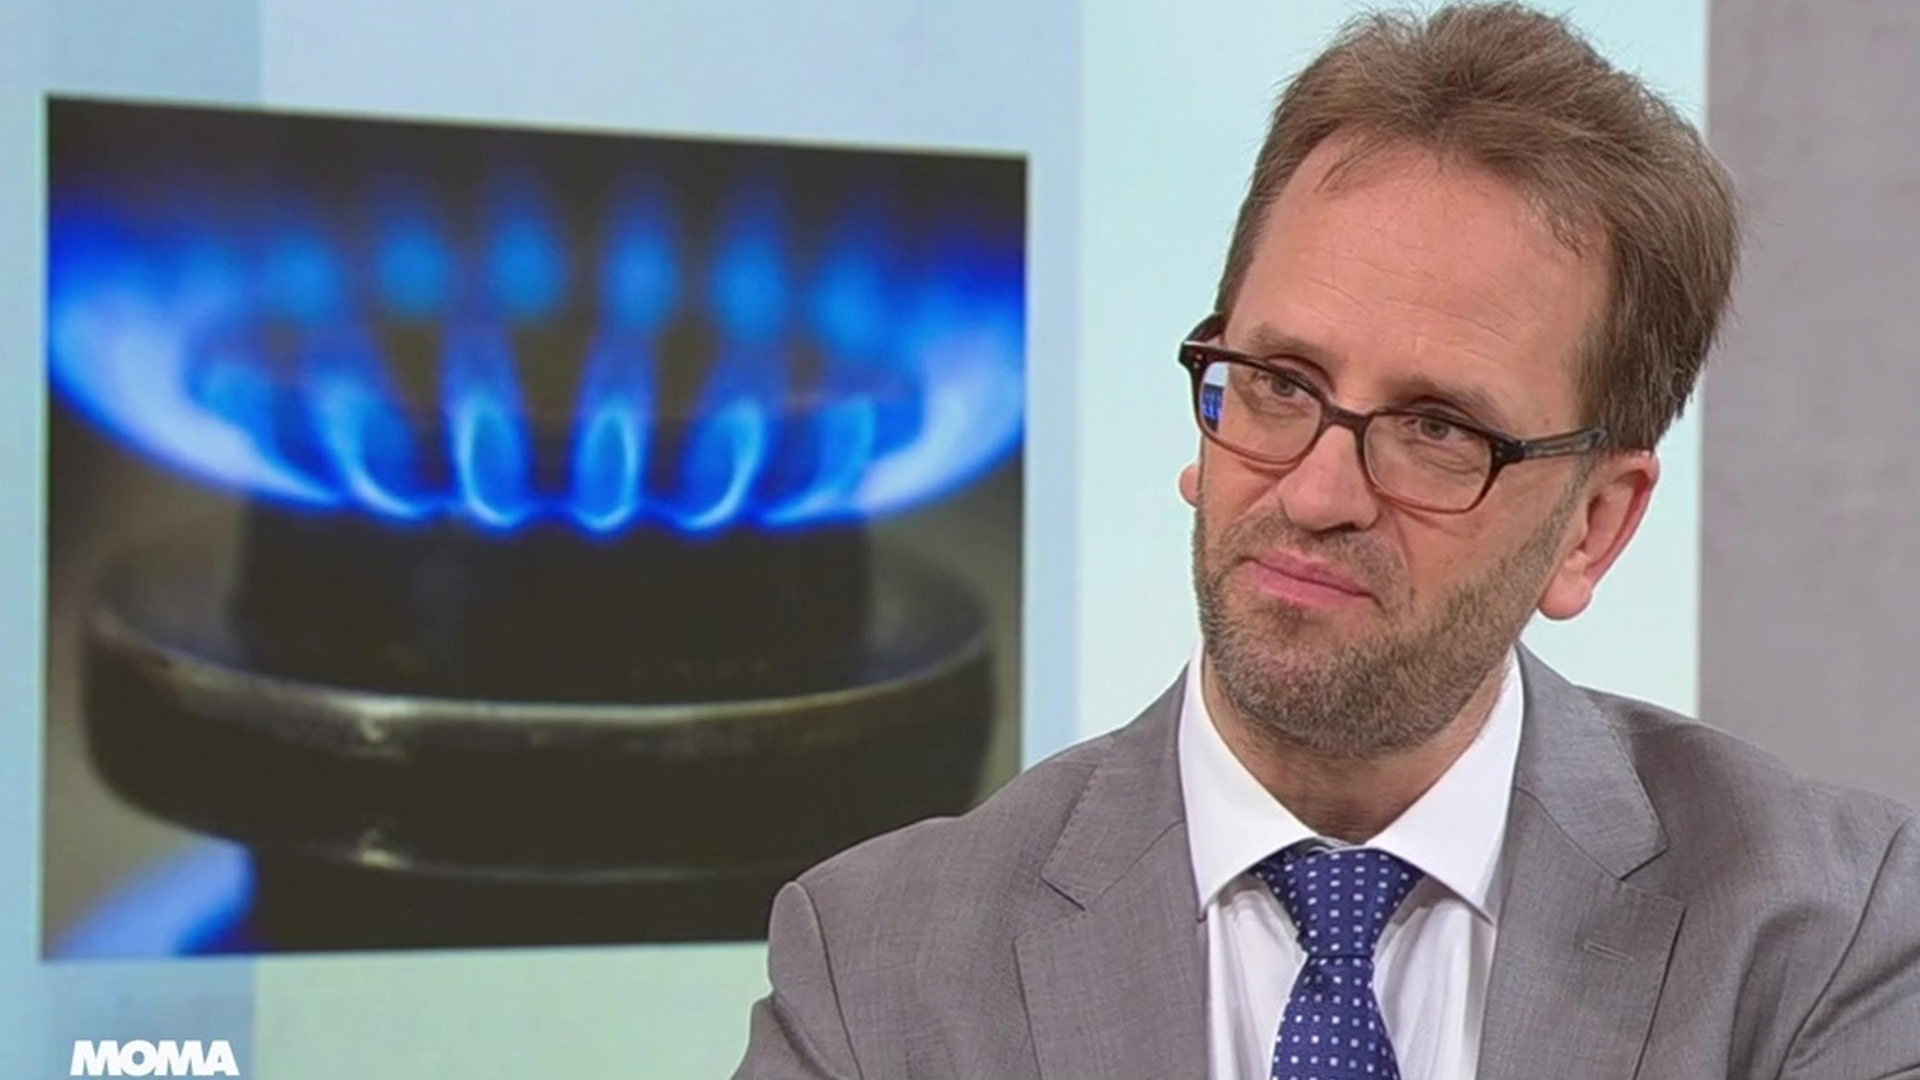 "Verdoppeln bis verdreifachen kann drin sein": Klaus Müller, Bundesnetzagentur, über mögliche Gas-Preissteigerungen